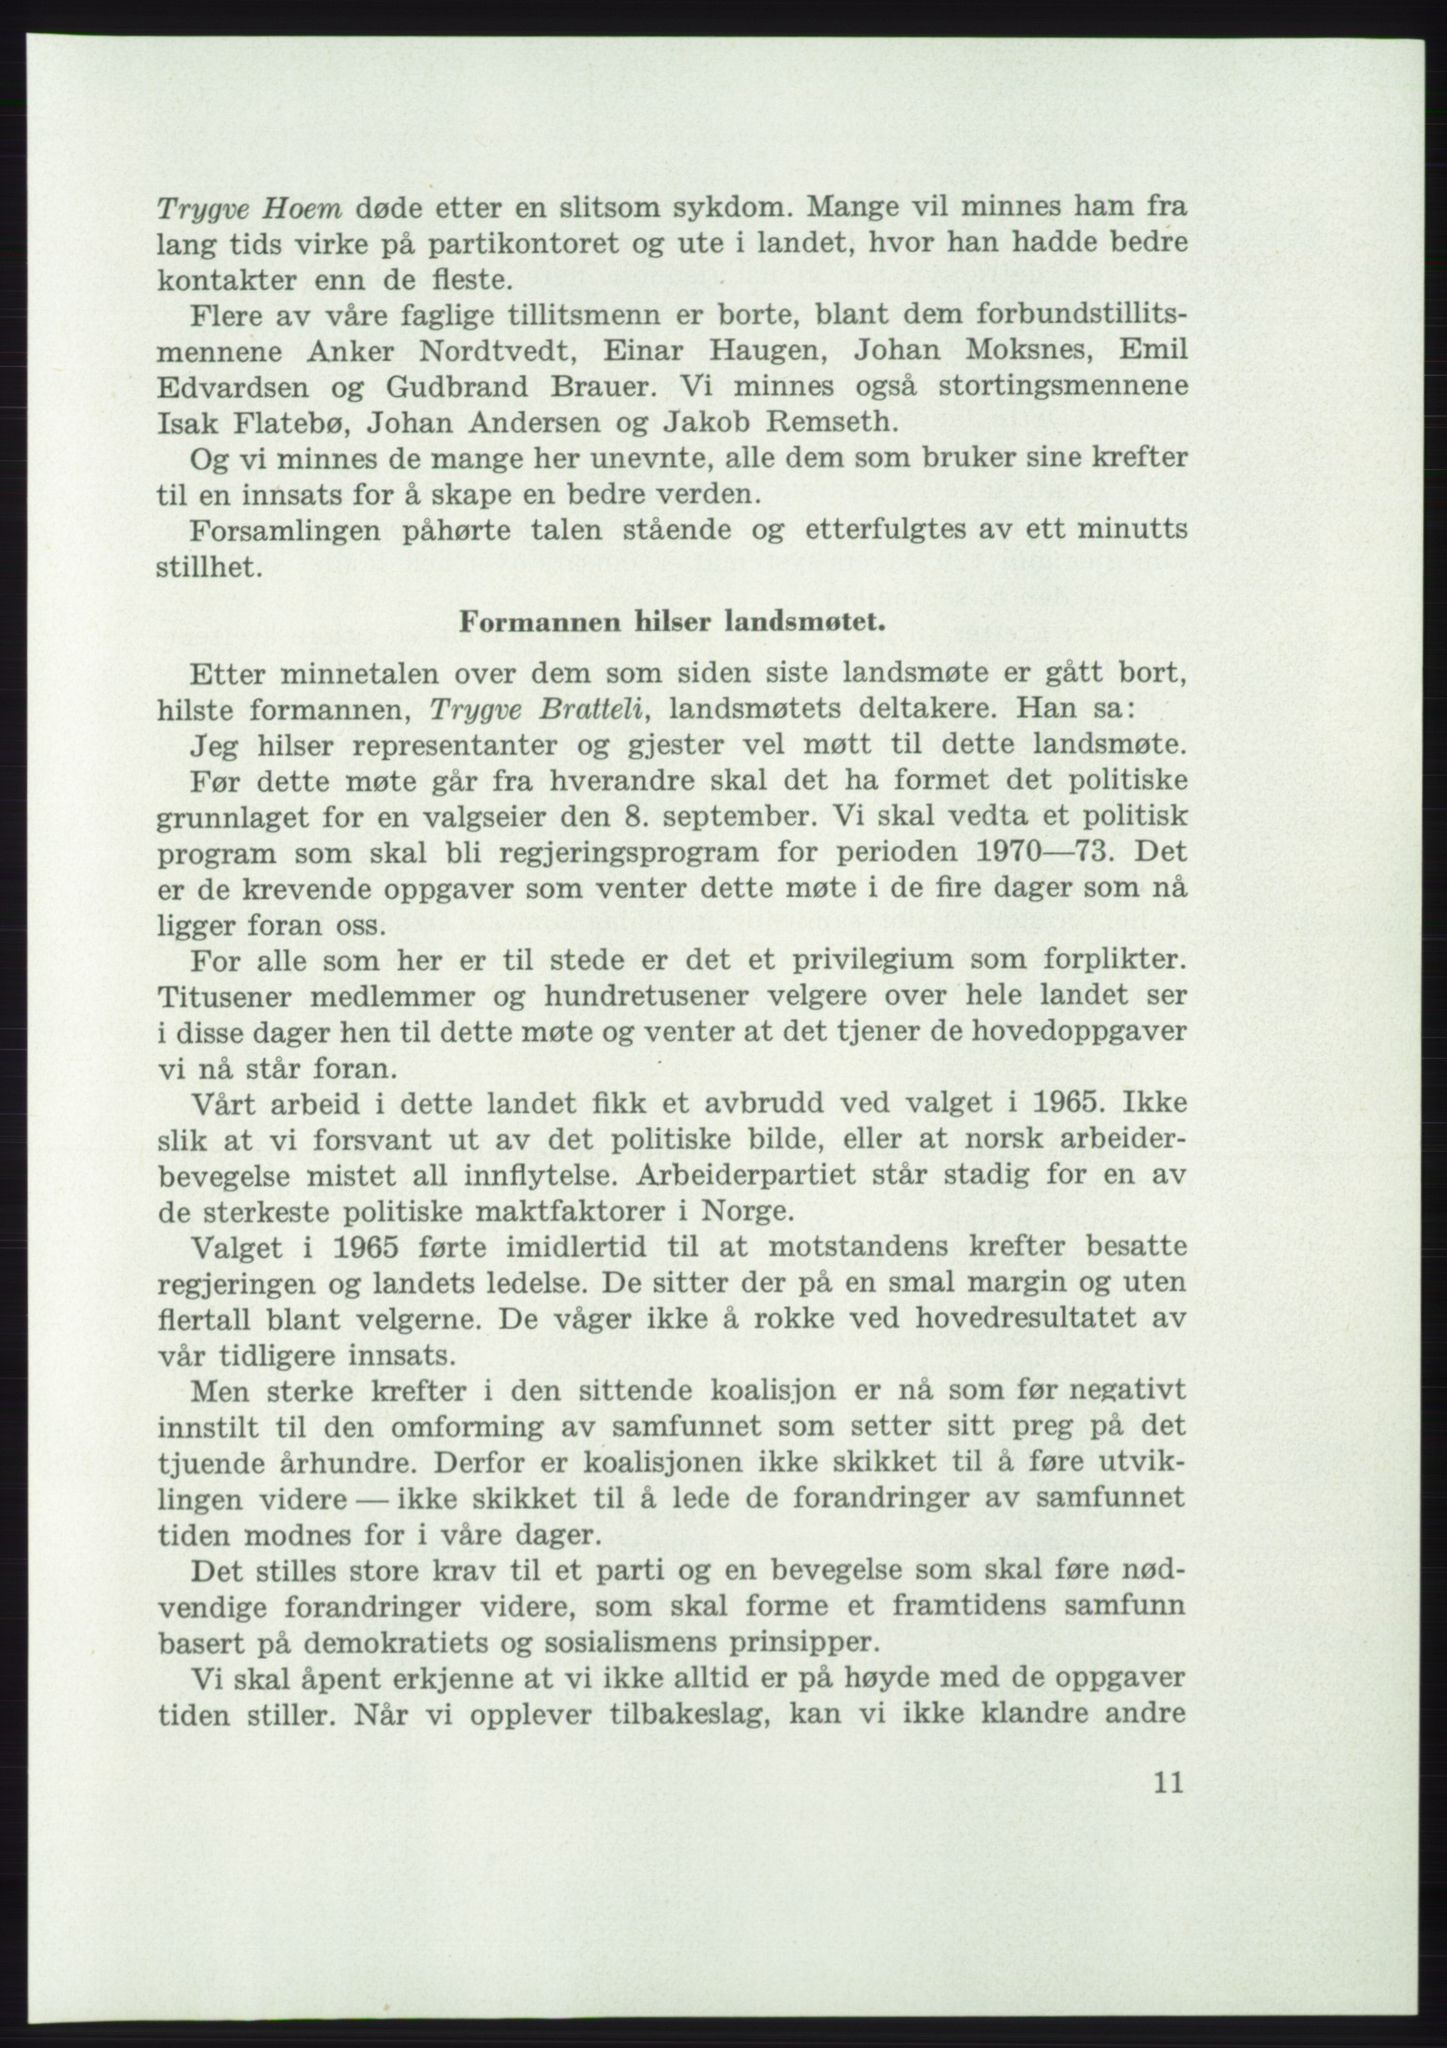 Det norske Arbeiderparti - publikasjoner, AAB/-/-/-: Protokoll over forhandlingene på det 42. ordinære landsmøte 11.-14. mai 1969 i Oslo, 1969, p. 11